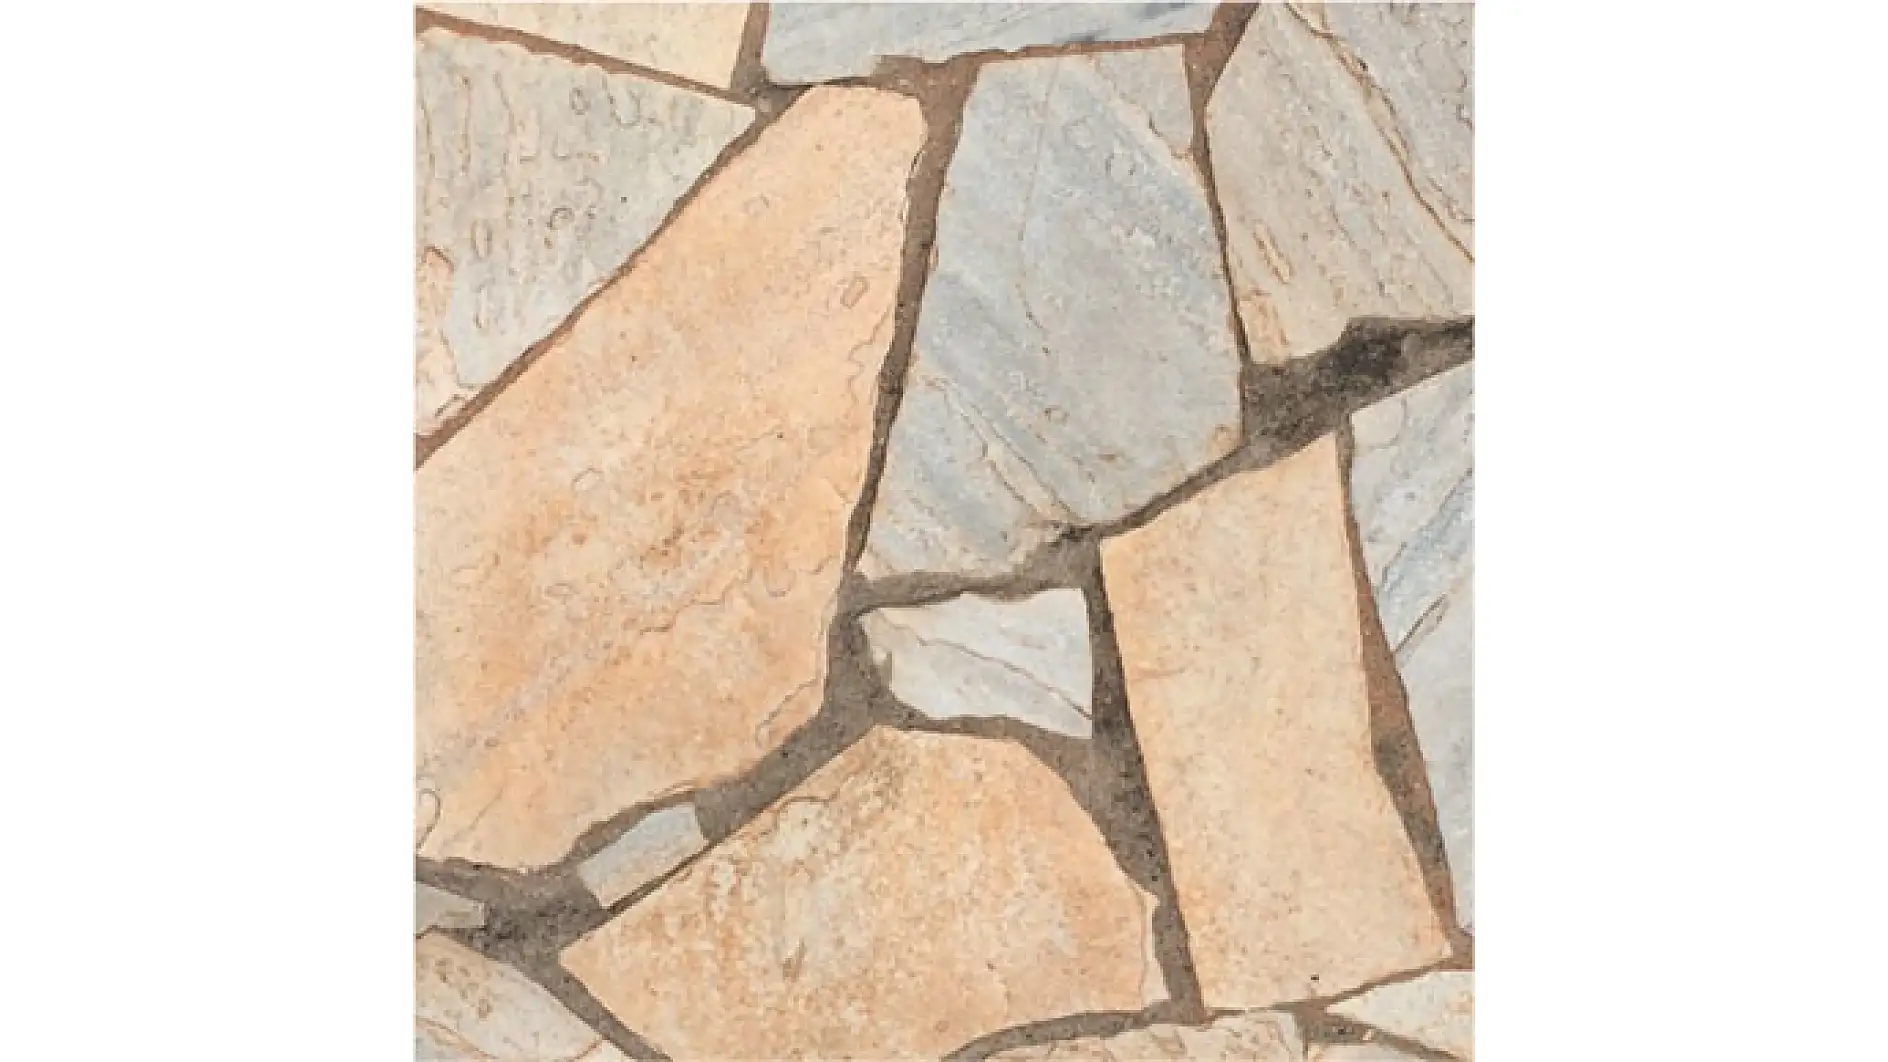 Imaginea unei suprafete din bucati de piatra